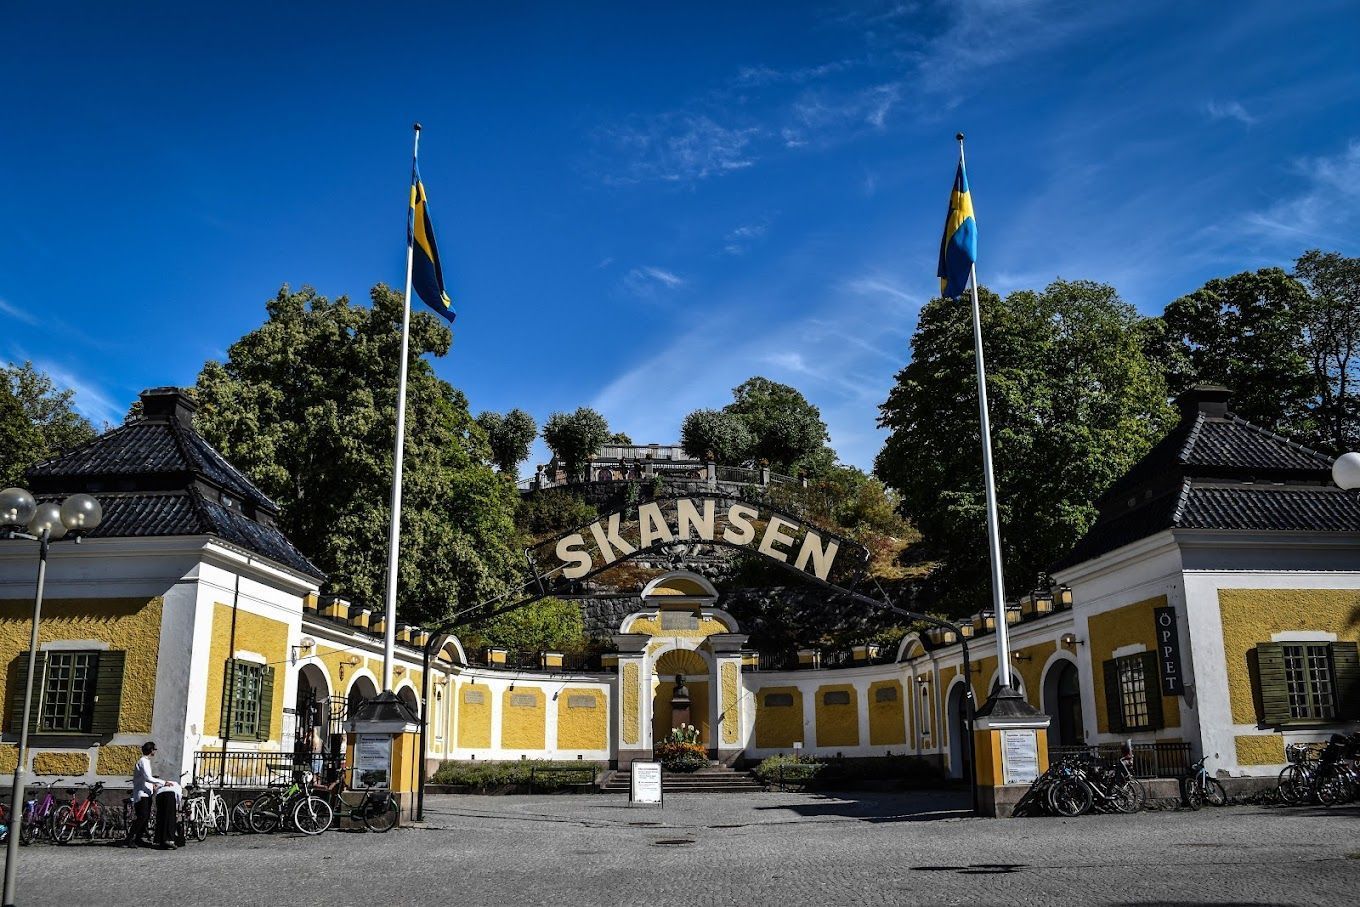 un bâtiment jaune avec un panneau indiquant « skansen » dessus